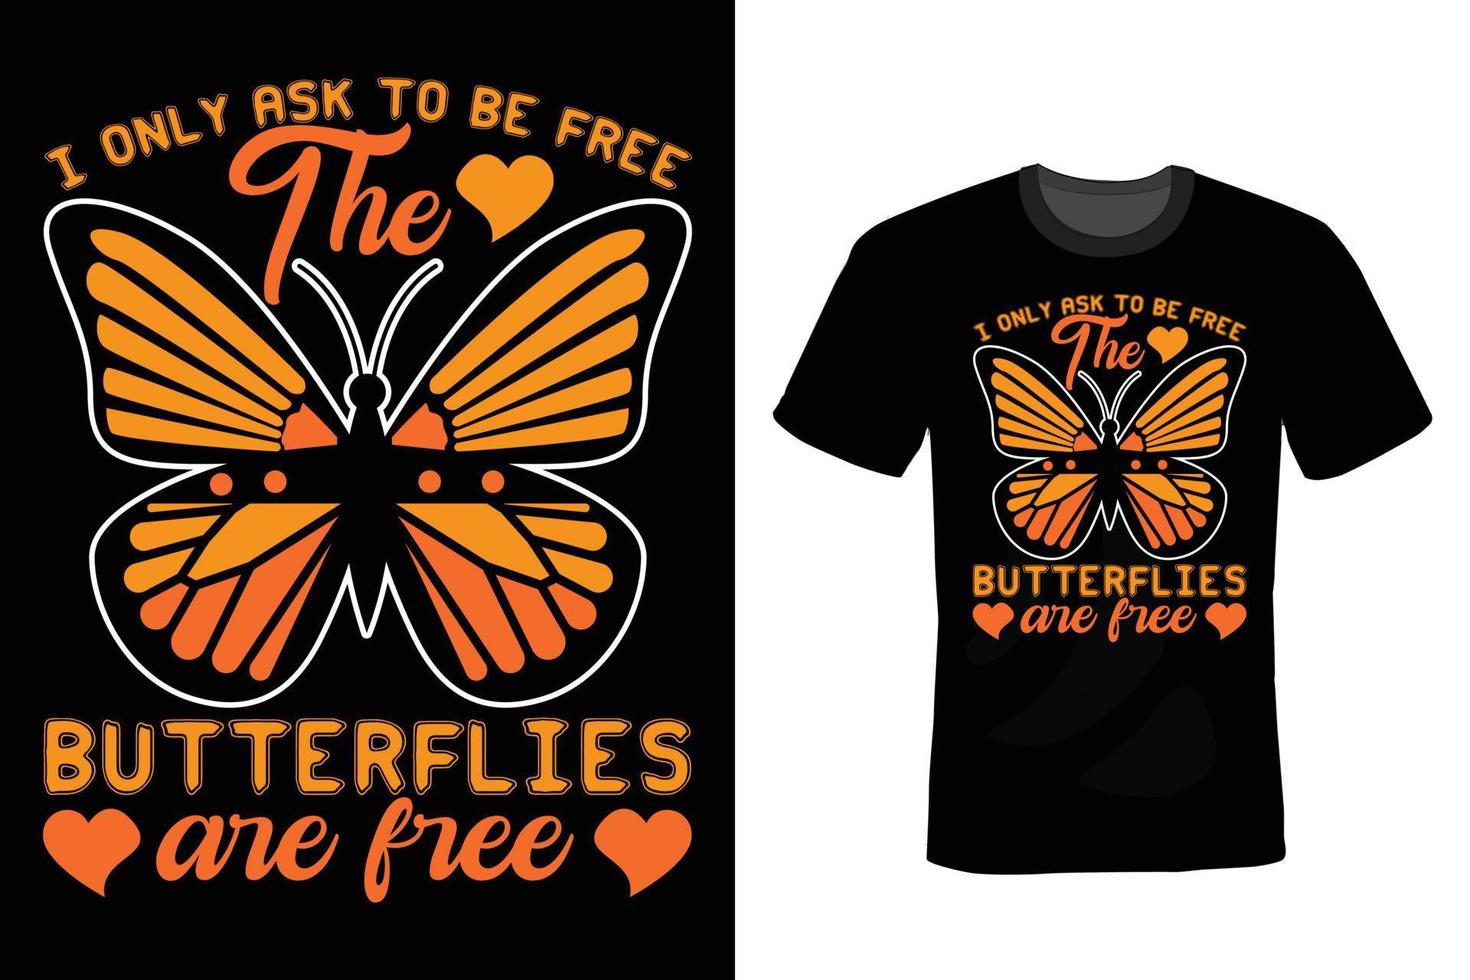 vlinder t-shirt ontwerp, vintage, typografie vector